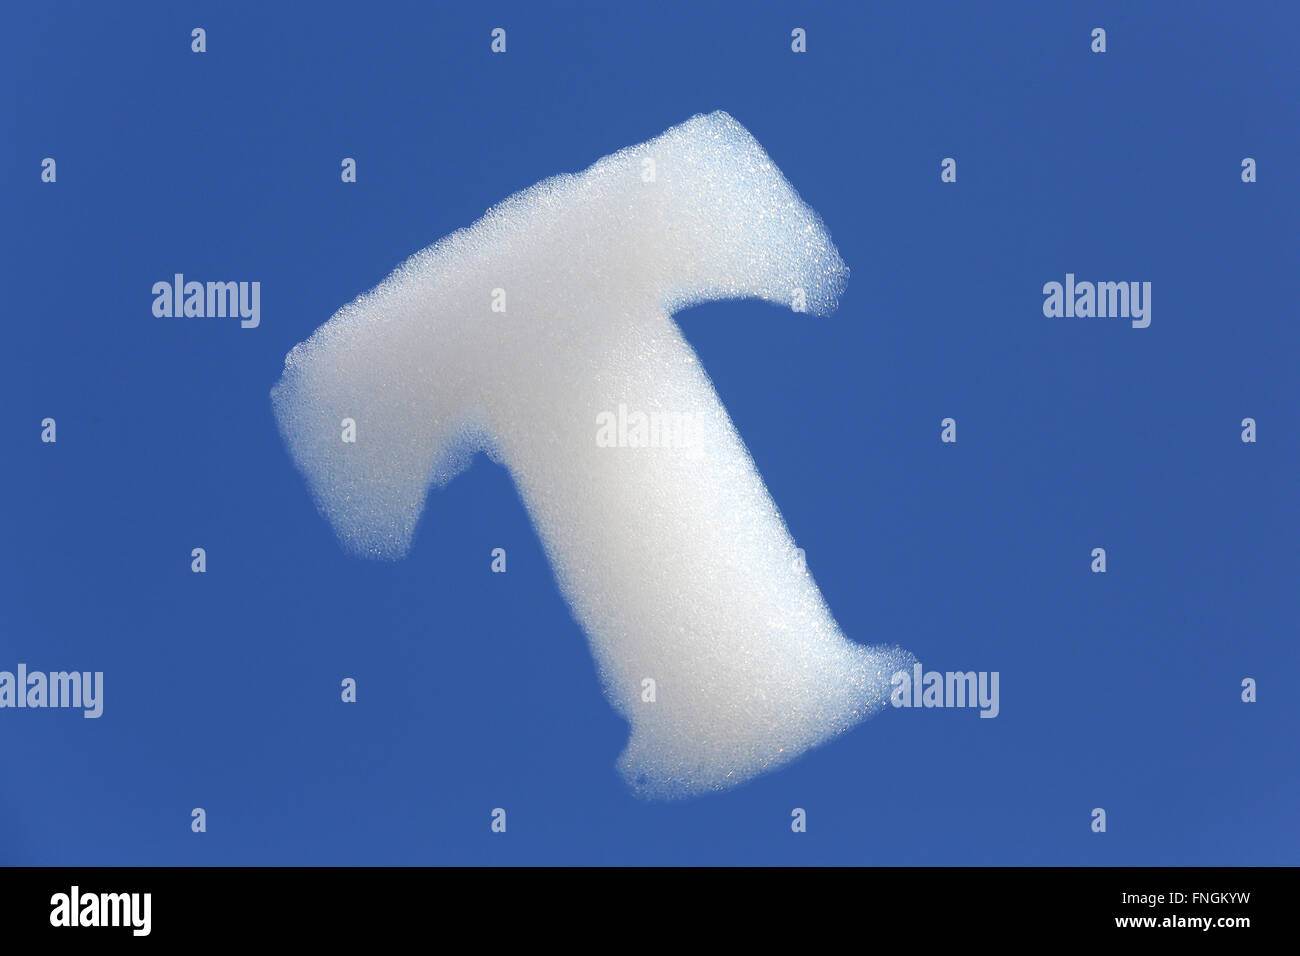 Des bulles de savon en forme de T'élever dans le ciel à une promotion de Deutsche Telekom's cloud computing au CeBIT 2016 Salon des technologies numériques le 14 mars 2016 à Hanovre, en Allemagne. Banque D'Images